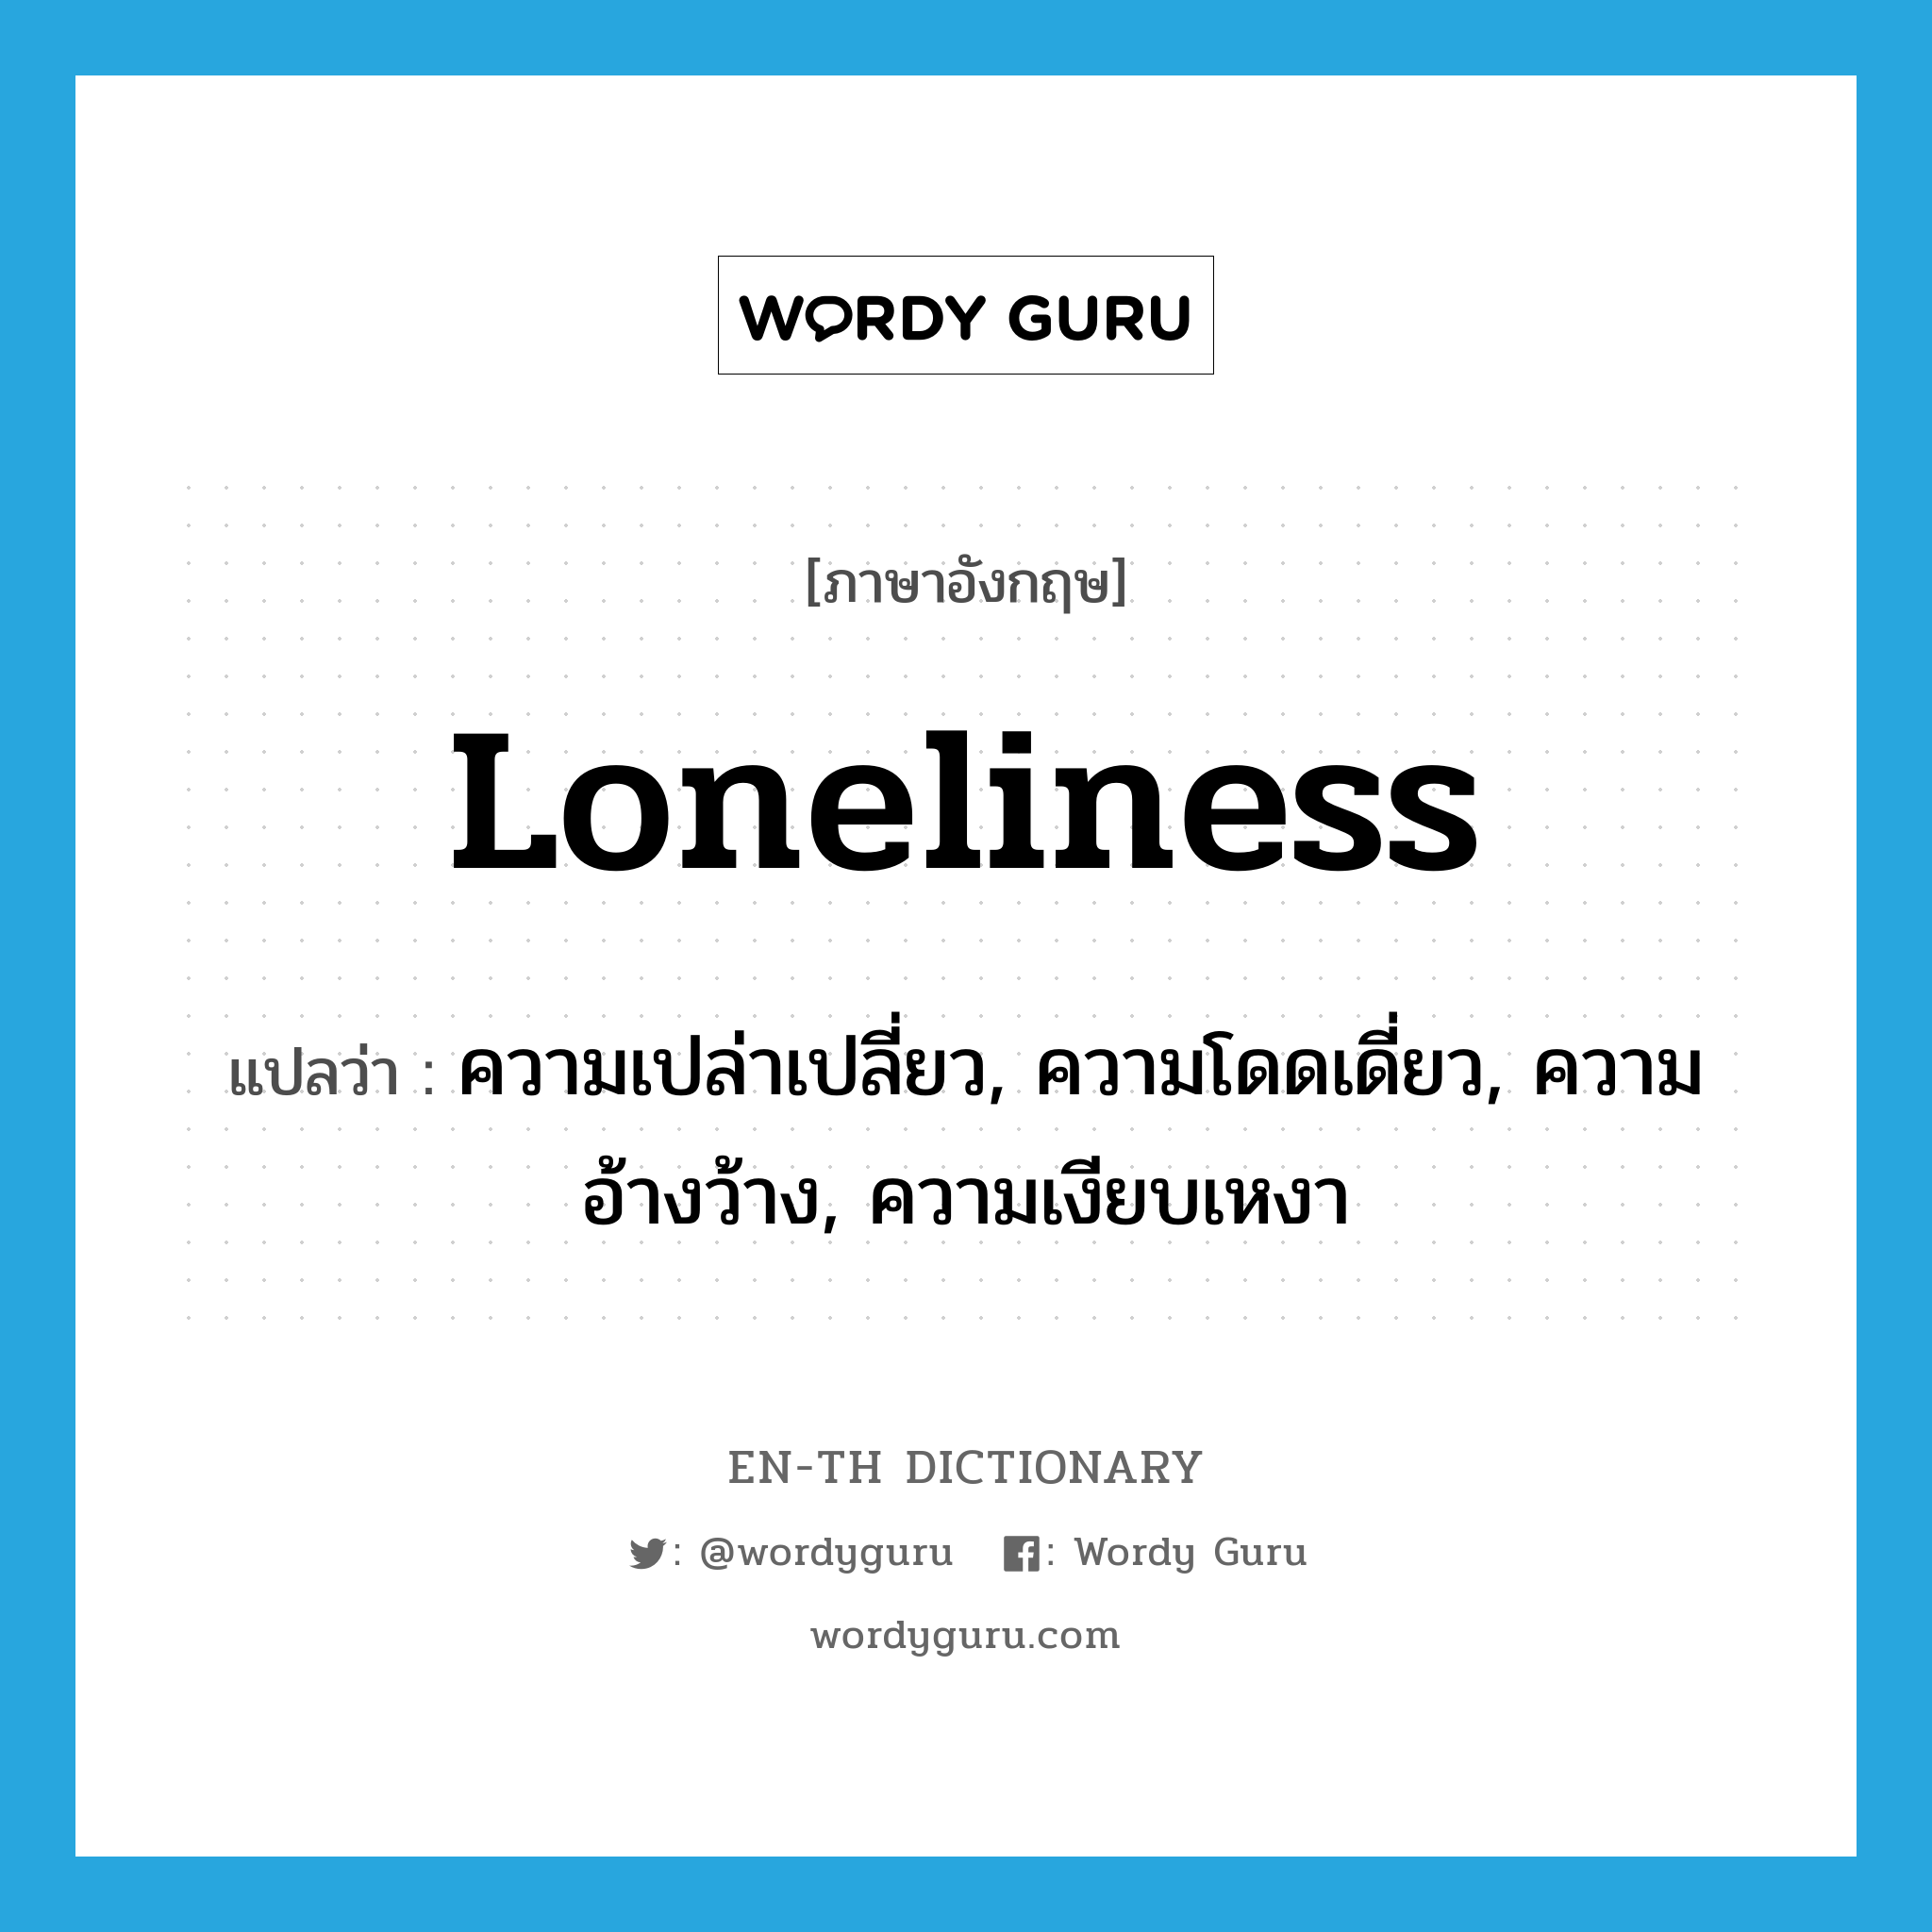 ความเปล่าเปลี่ยว, ความโดดเดี่ยว, ความอ้างว้าง, ความเงียบเหงา ภาษาอังกฤษ?, คำศัพท์ภาษาอังกฤษ ความเปล่าเปลี่ยว, ความโดดเดี่ยว, ความอ้างว้าง, ความเงียบเหงา แปลว่า loneliness ประเภท N หมวด N